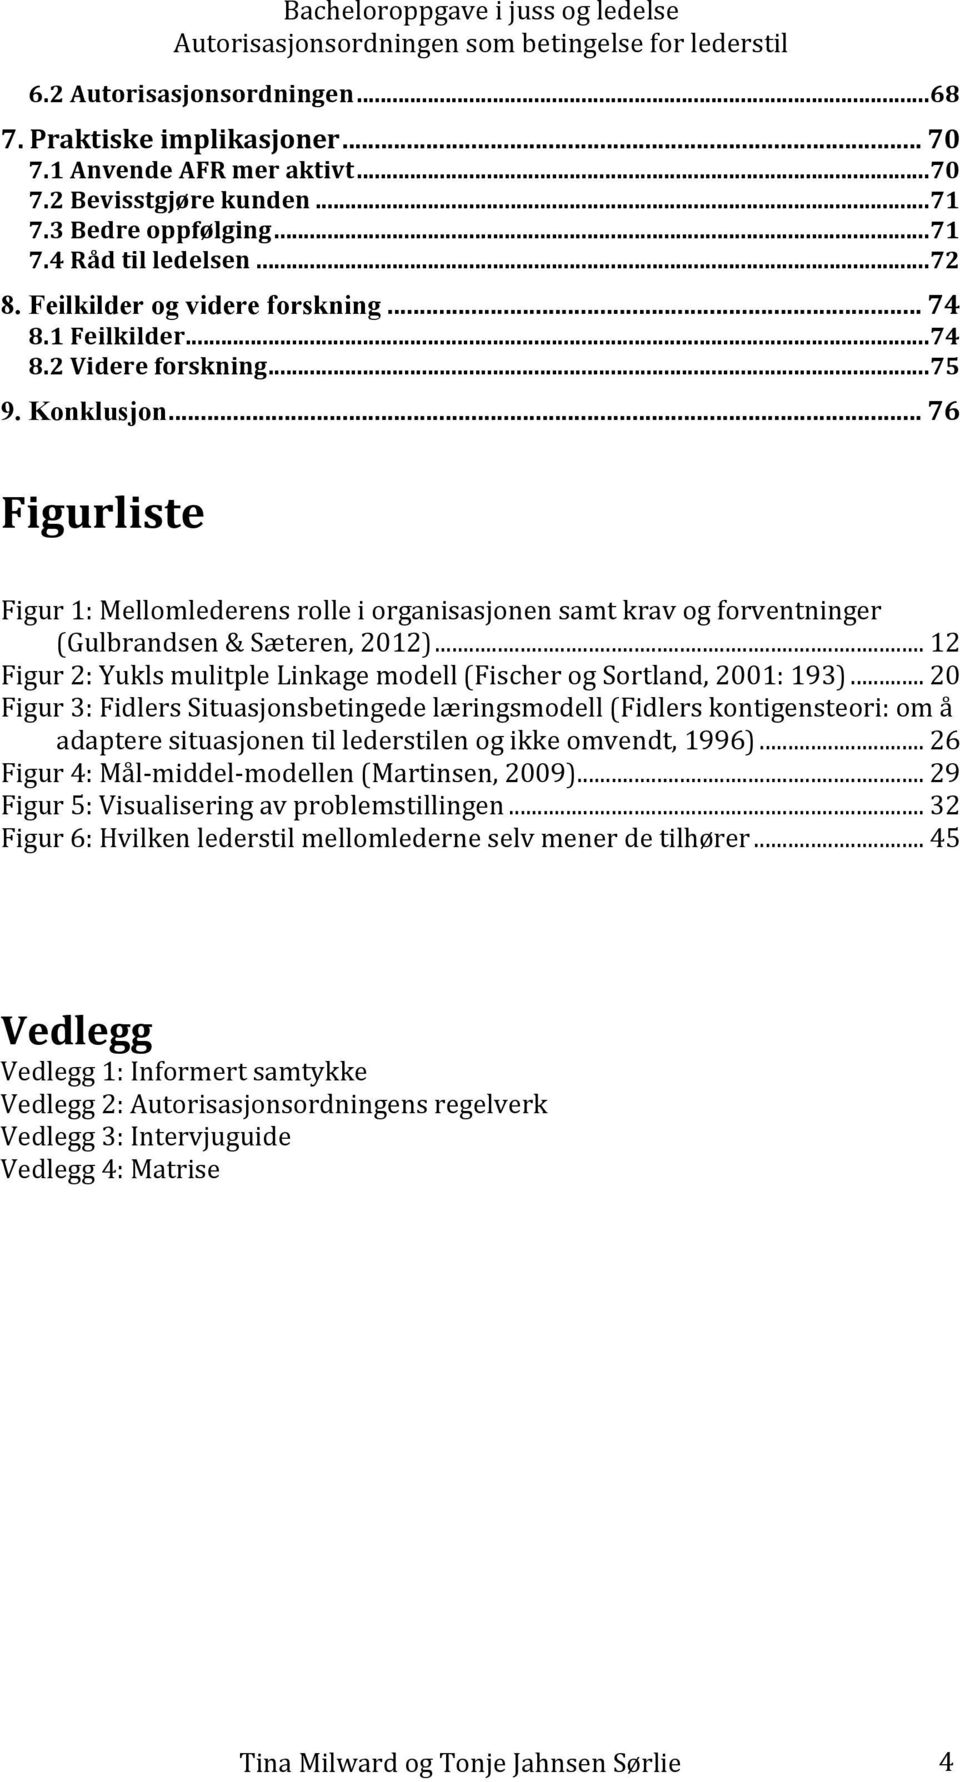 .. 76 Figurliste Figur 1: Mellomlederens rolle i organisasjonen samt krav og forventninger (Gulbrandsen & Sæteren, 2012)... 12 Figur 2: Yukls mulitple Linkage modell (Fischer og Sortland, 2001: 193).